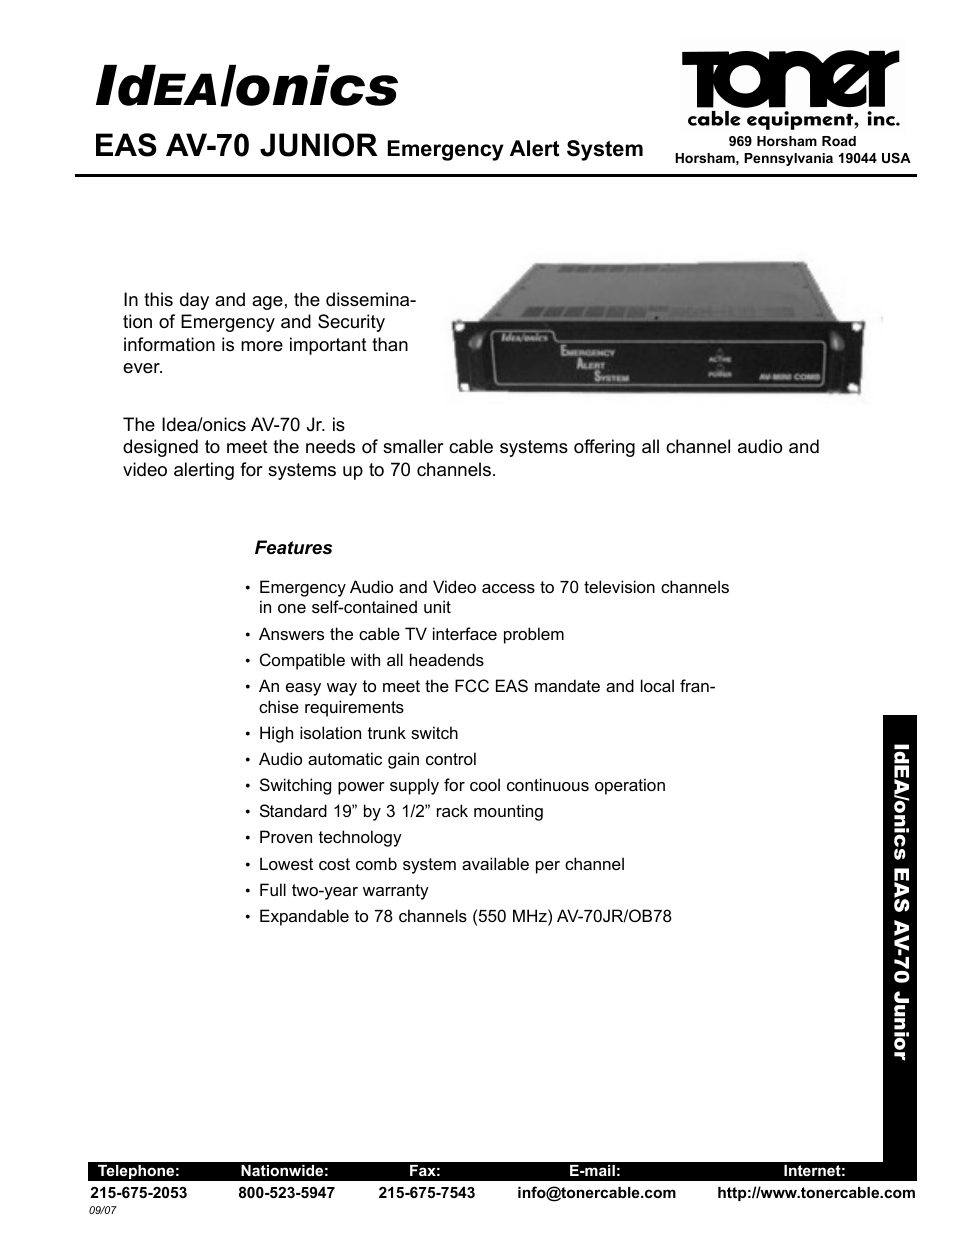 AV-70 Junior Emergency Alert System